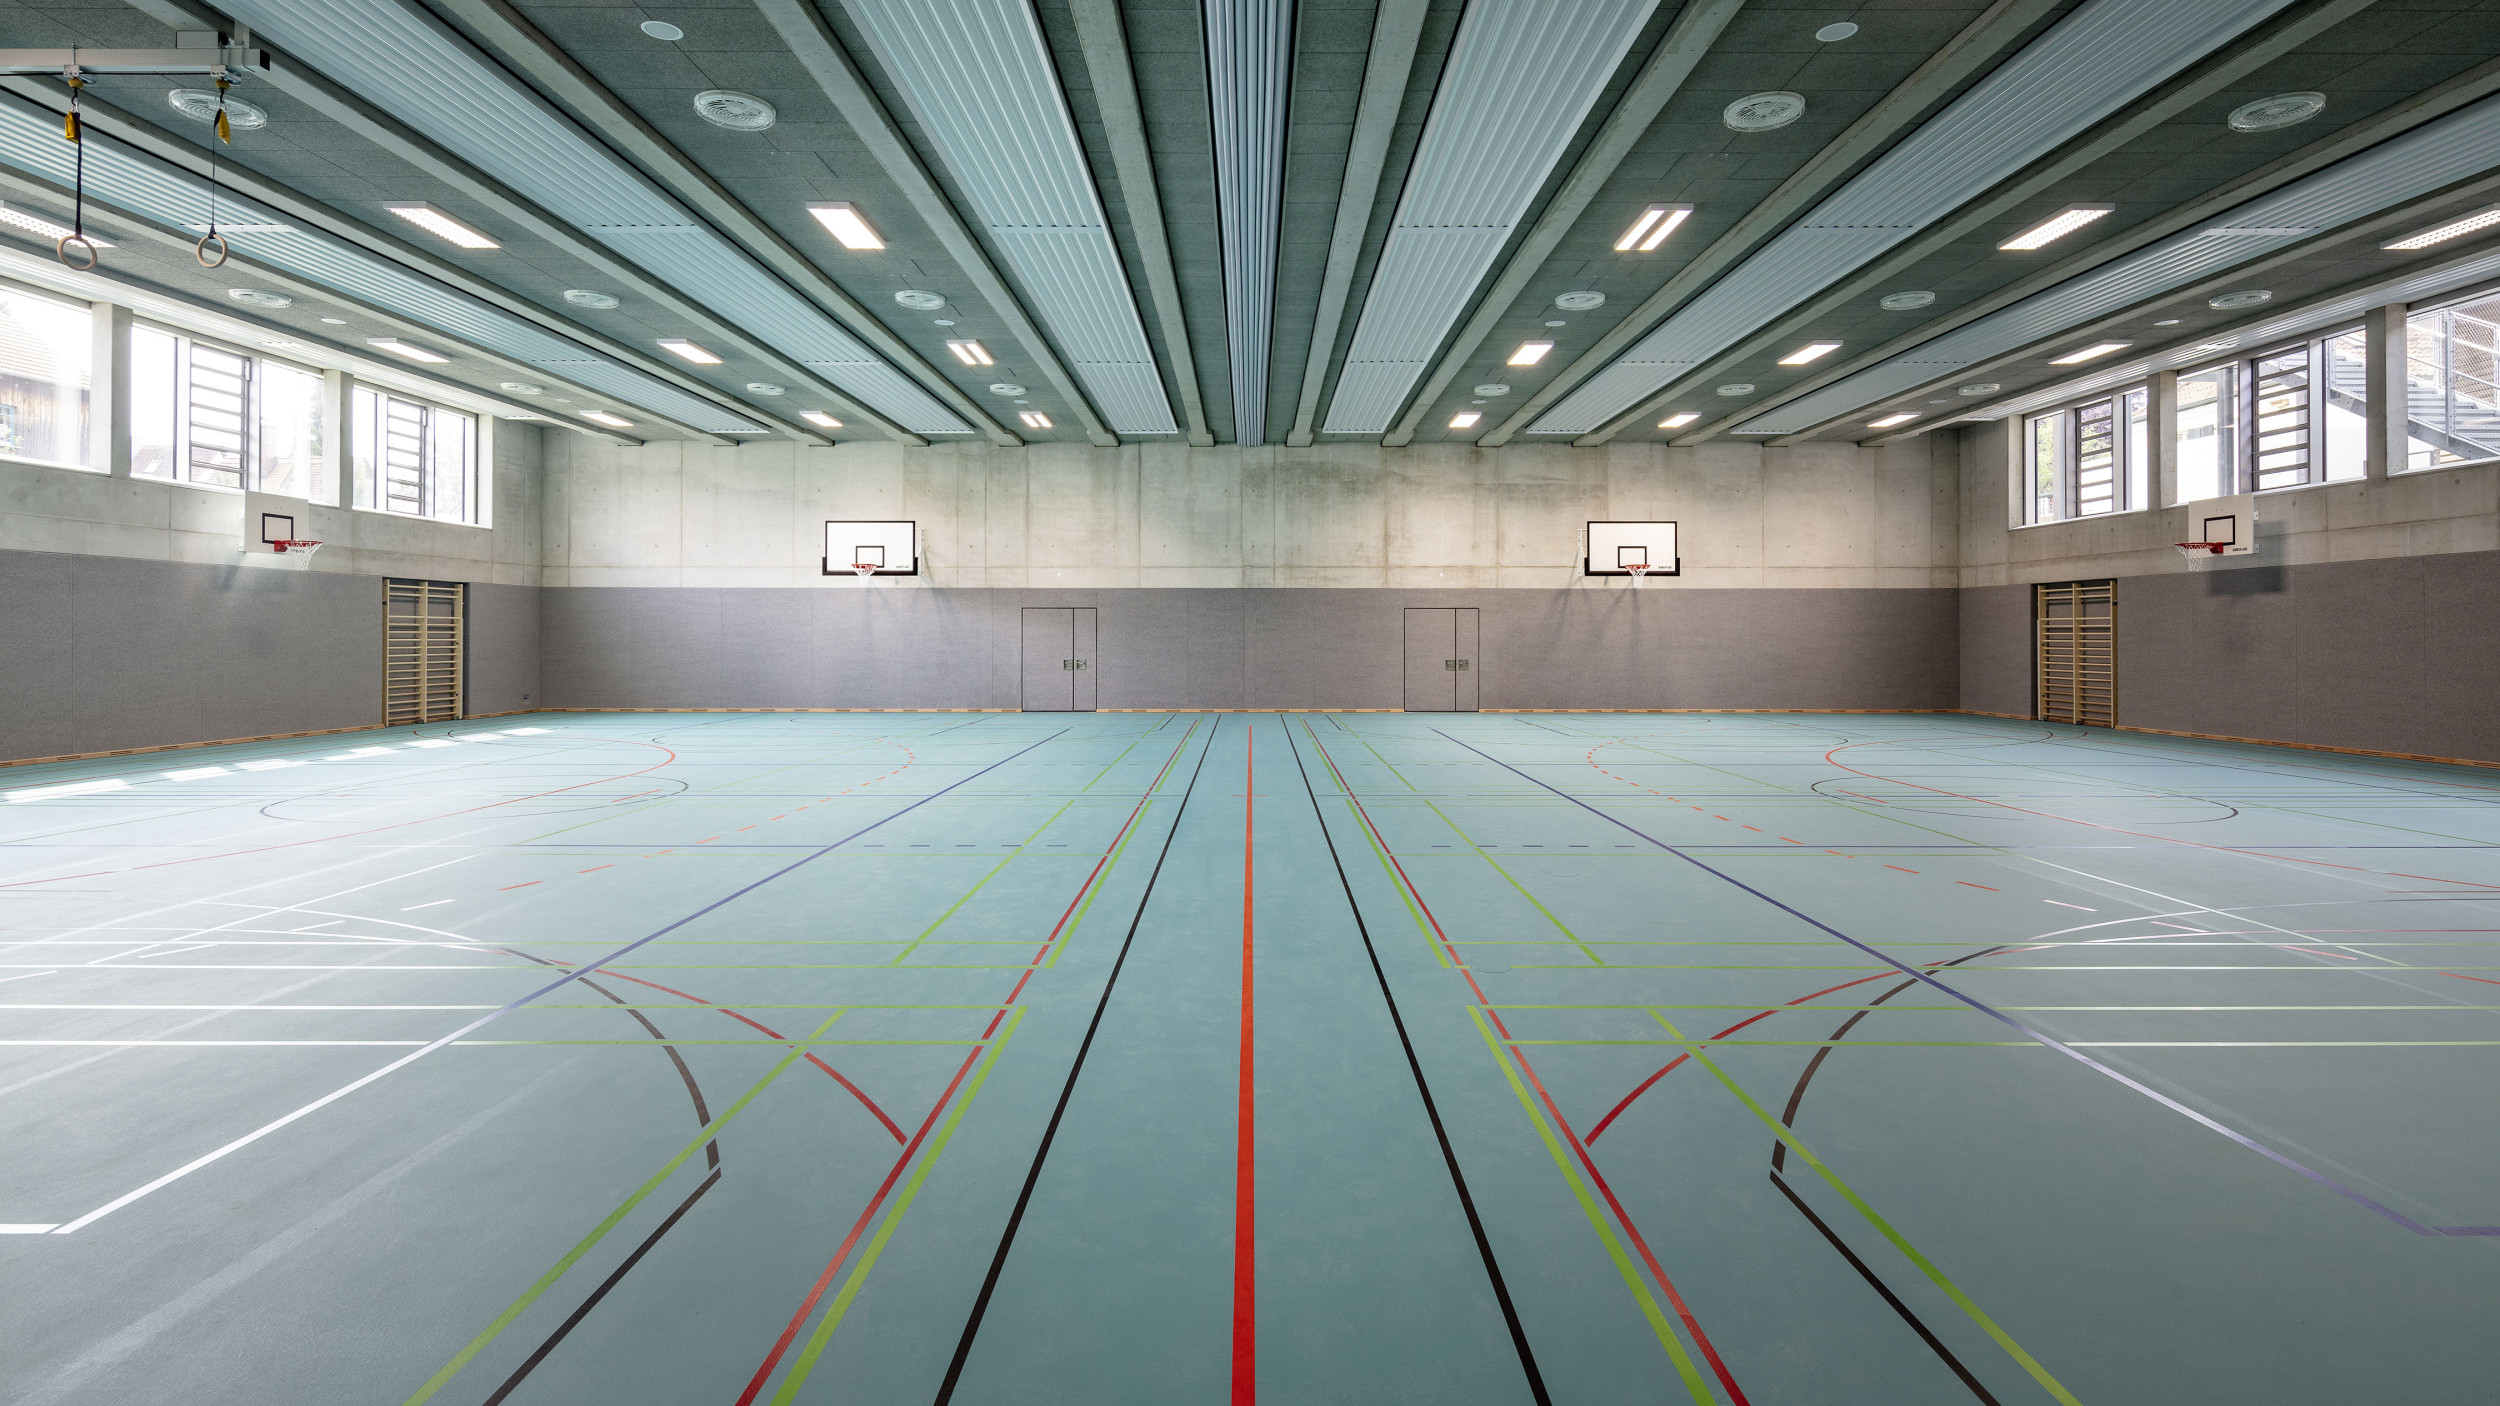 Innenperspektive der Sporthalle mit einem türkisen Hallenboden.